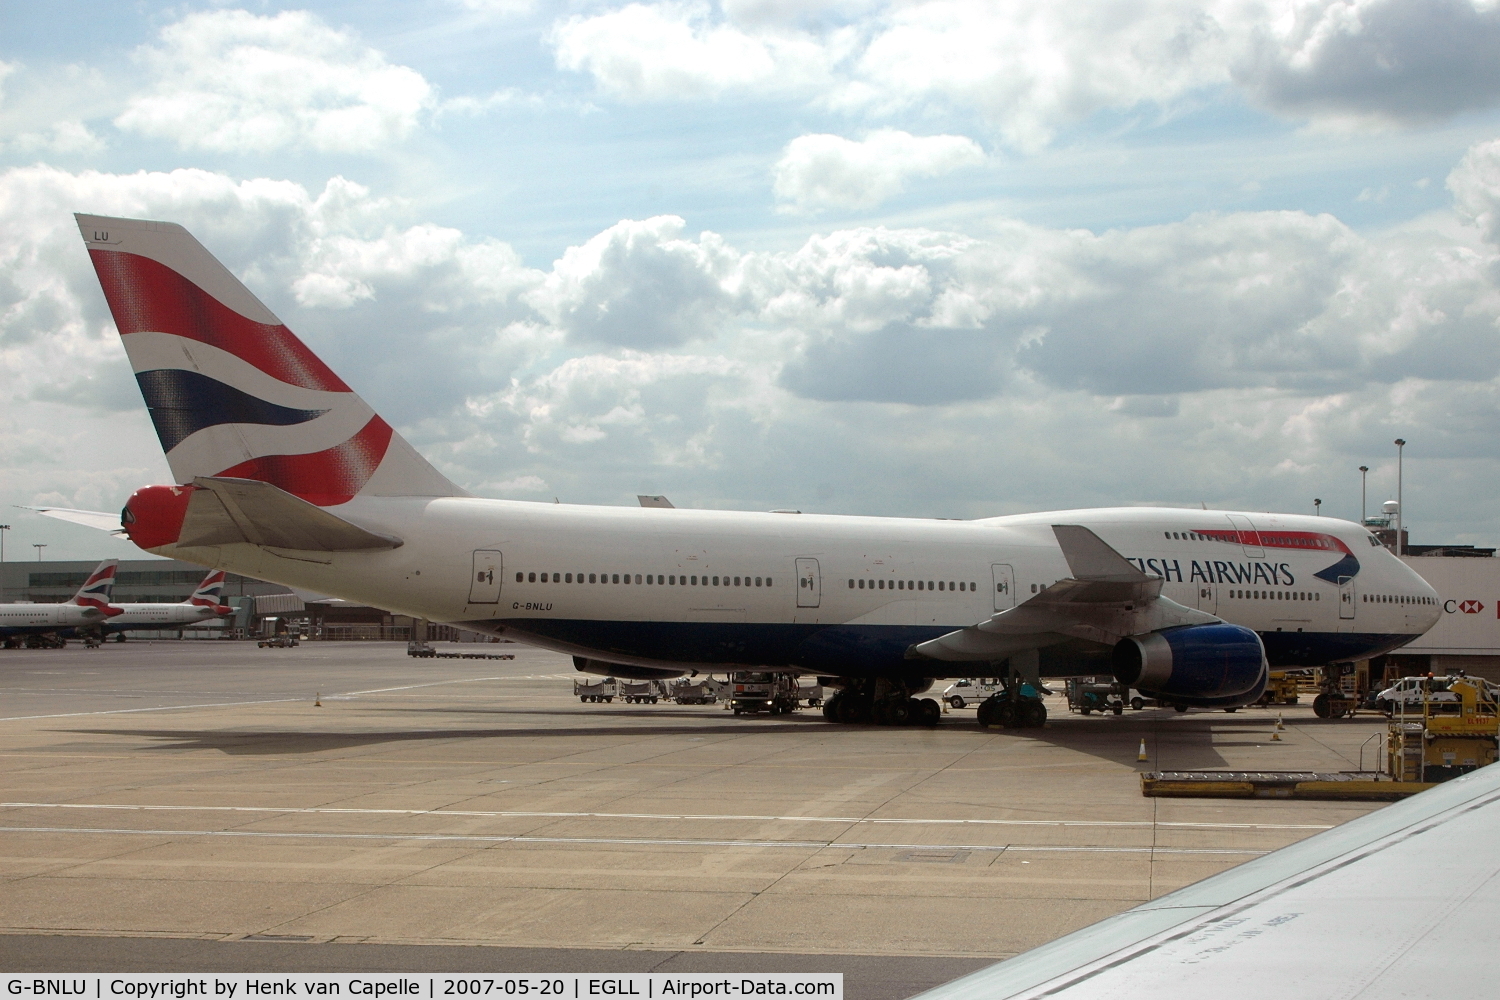 G-BNLU, 1992 Boeing 747-436 C/N 25406, British Airways 747-400 at the gate London Heathrow airport.